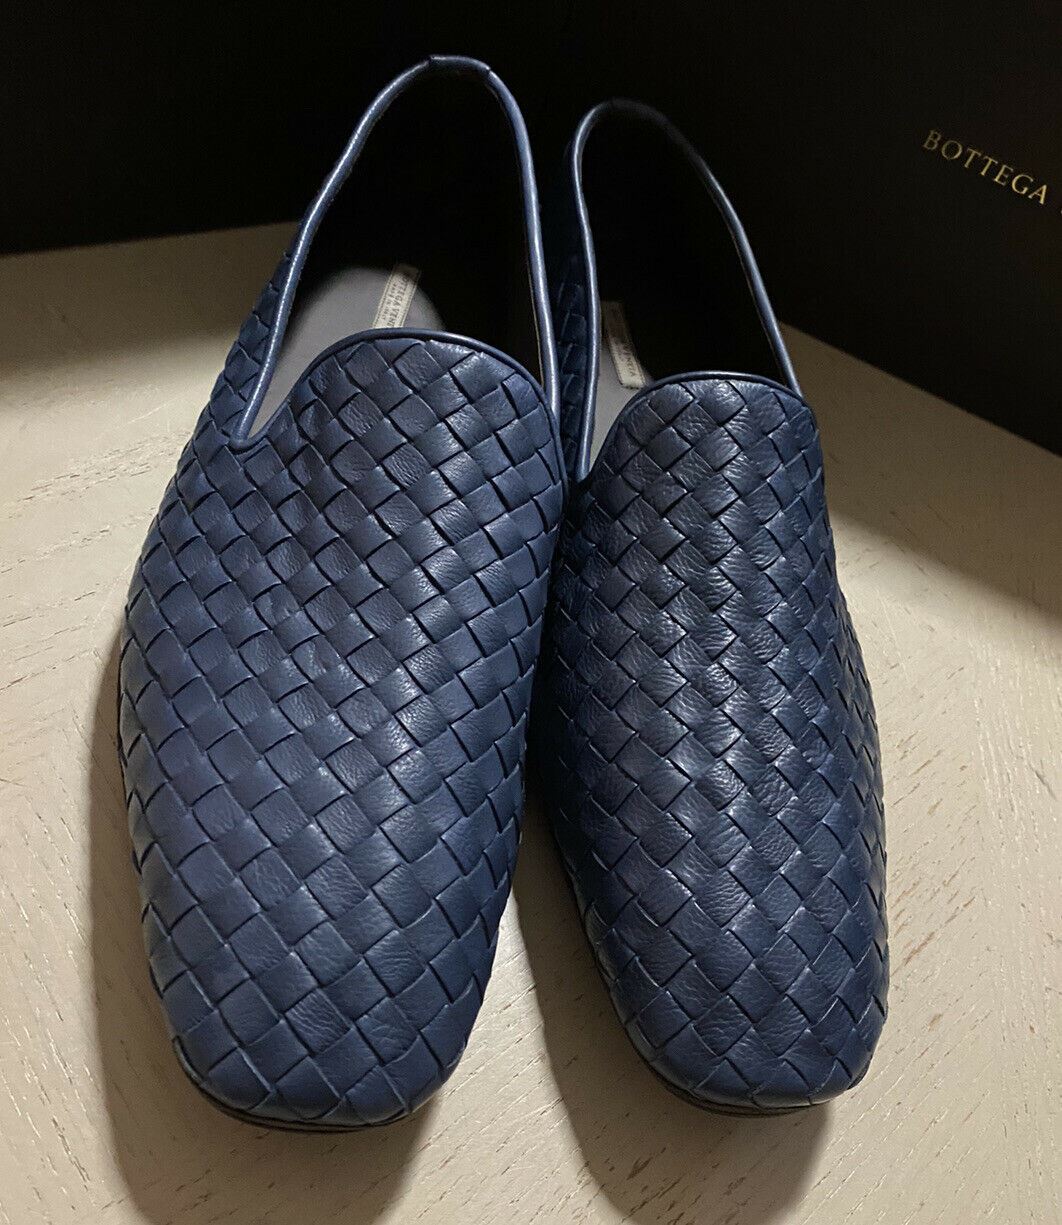 NIB $ 810 Bottega Veneta Herren Leder-Loafer-Schuhe Blau 11,5 US/44,5 Eu